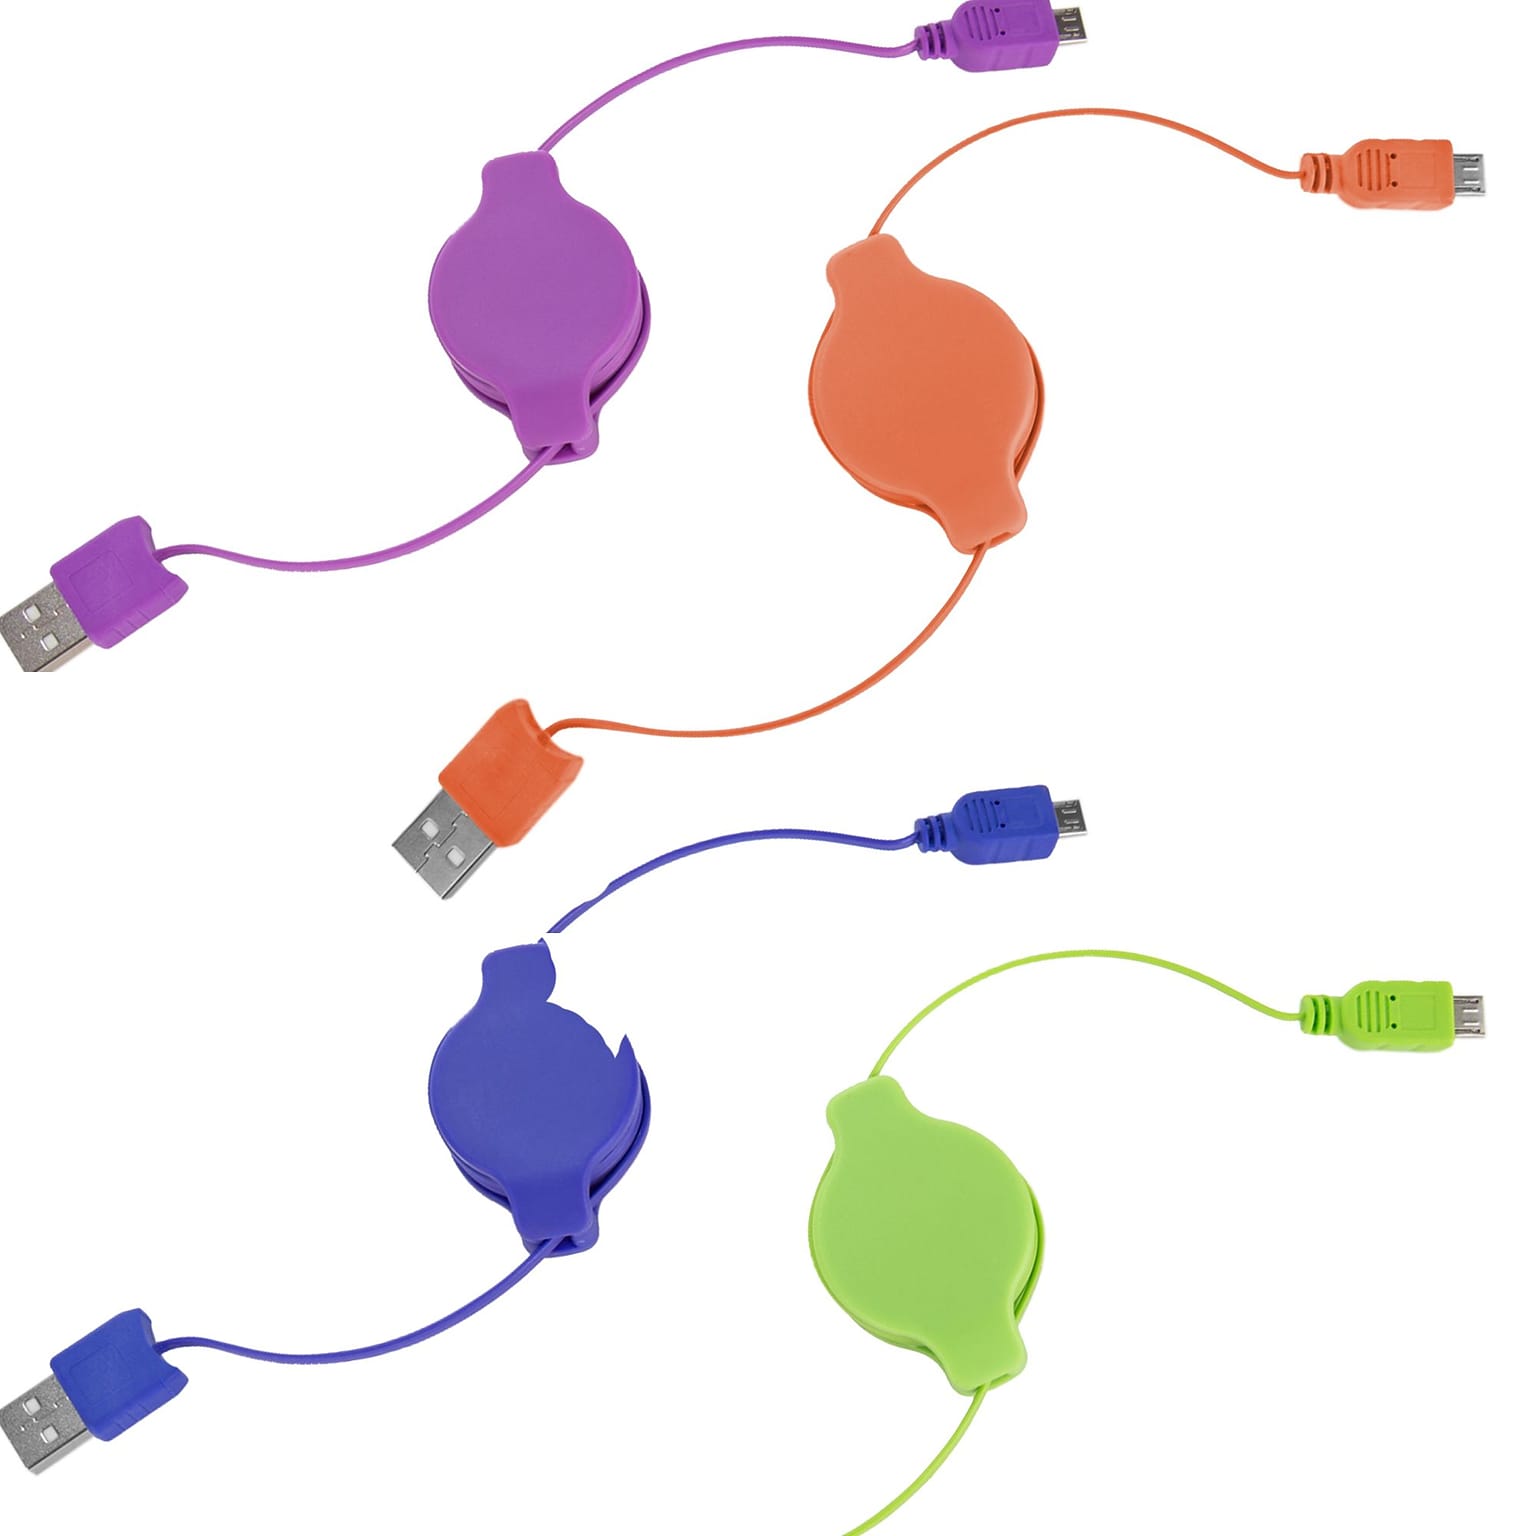 Retractable Micro USB Cable (Purple, Orange, Green,Blue)